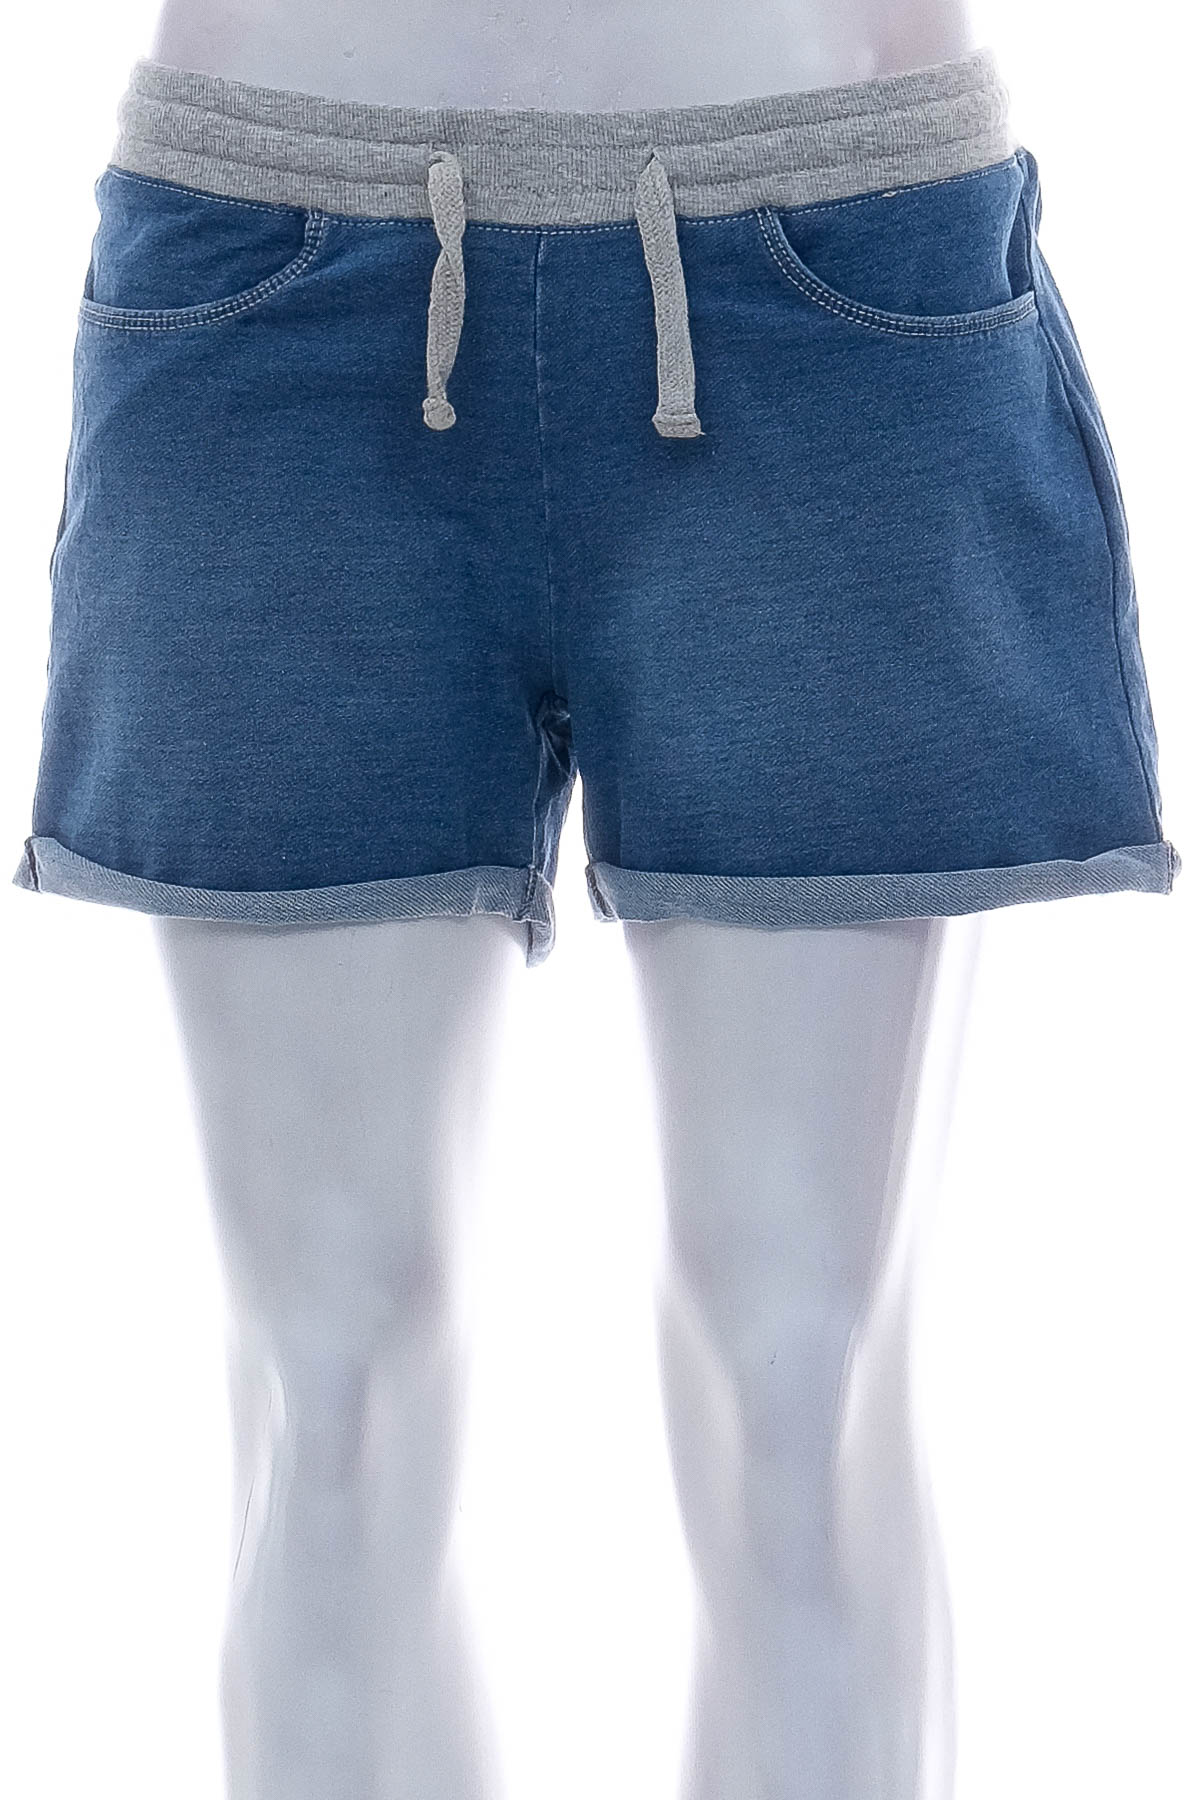 Female shorts - Blue Motion - 0